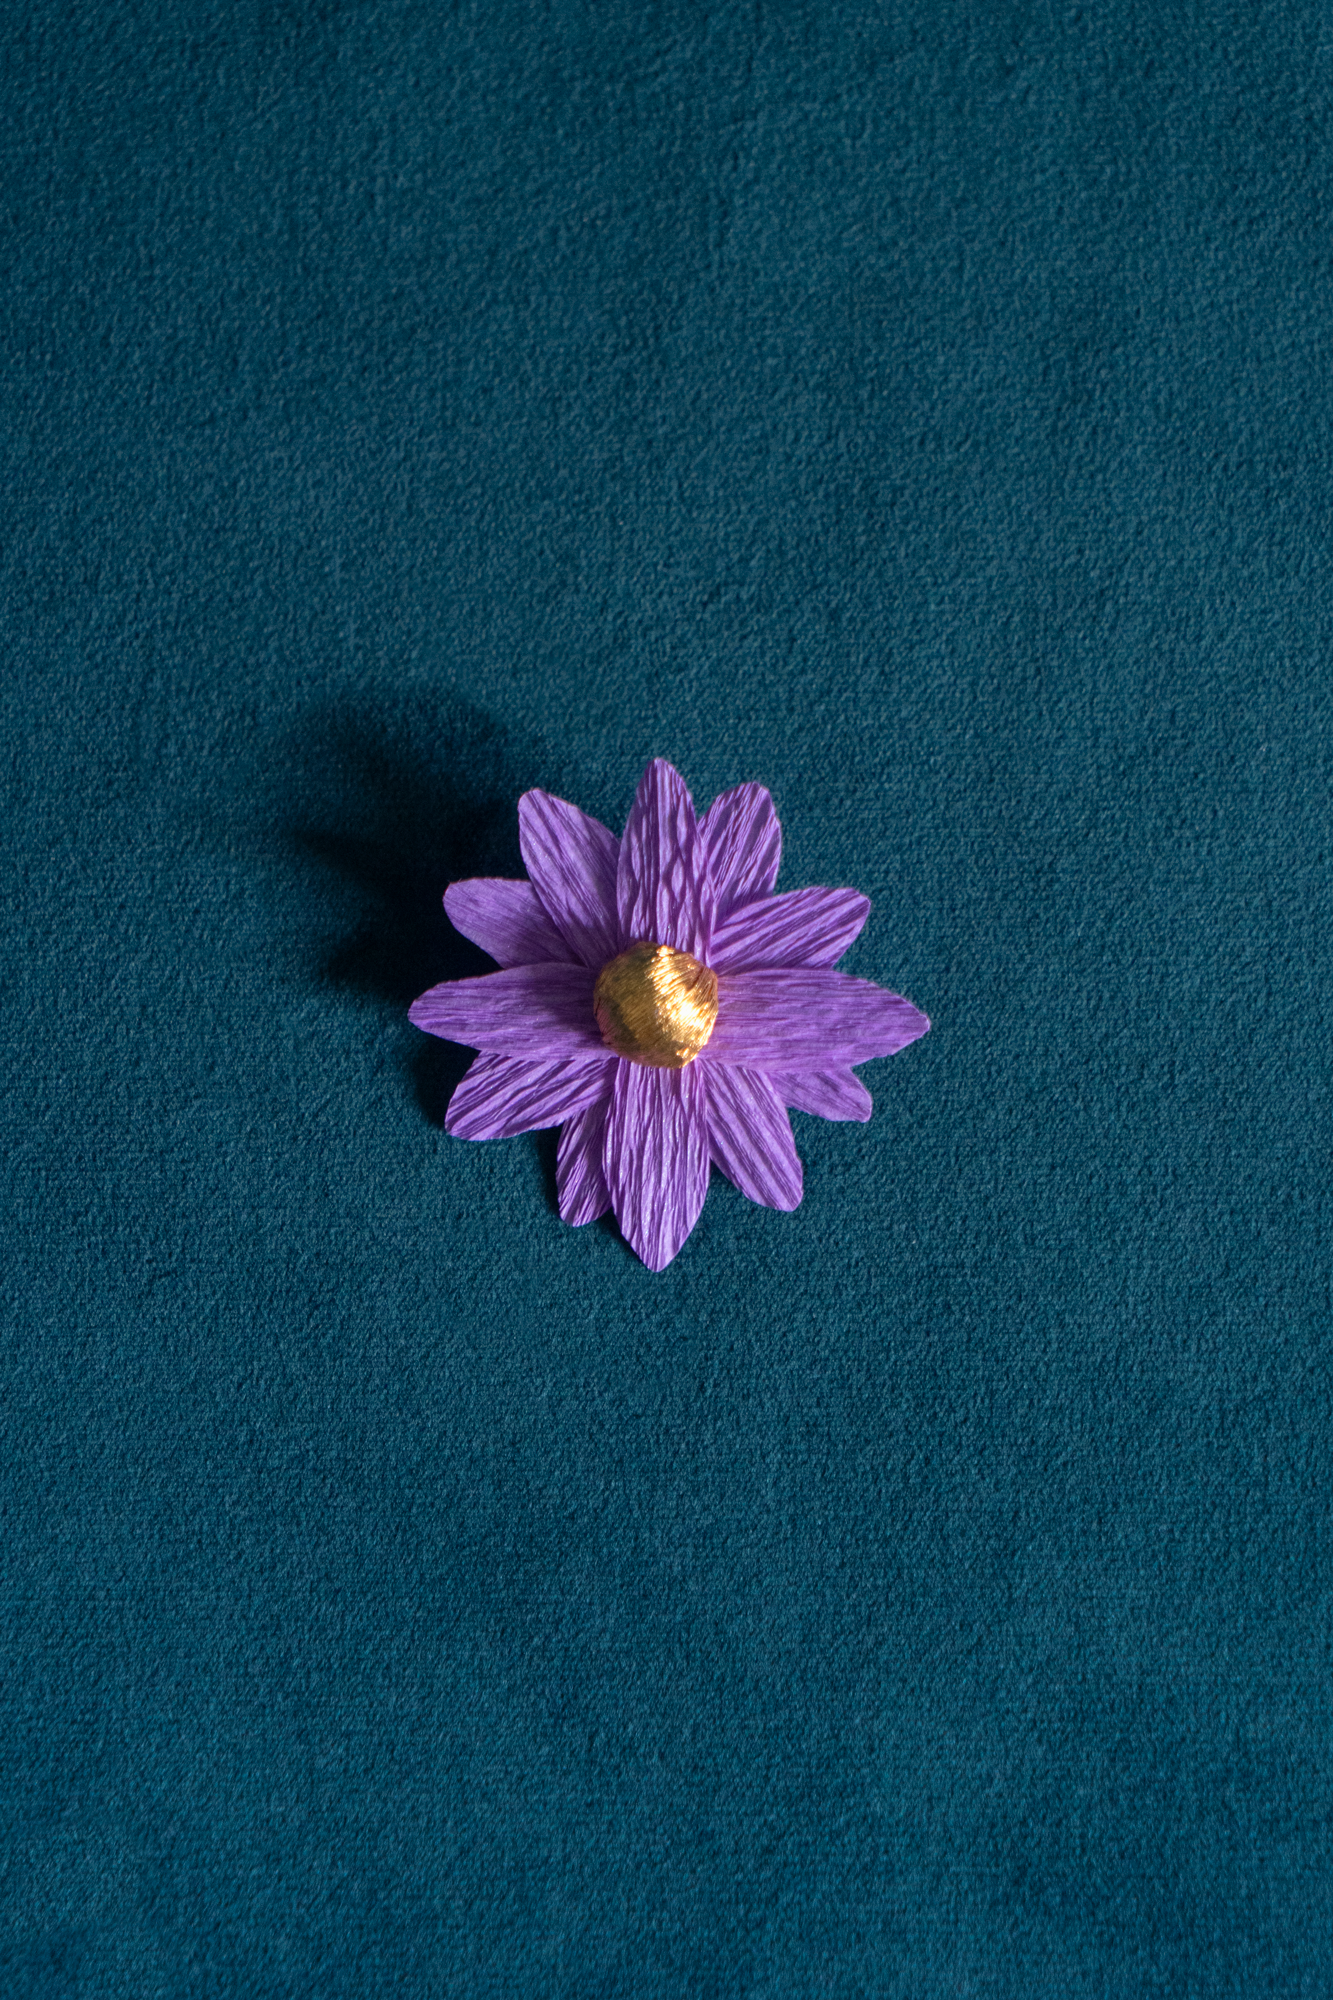 Broche Marguerite de Maison Tessier couleur Améthyste coeur Or, sur tissus velour émeraude